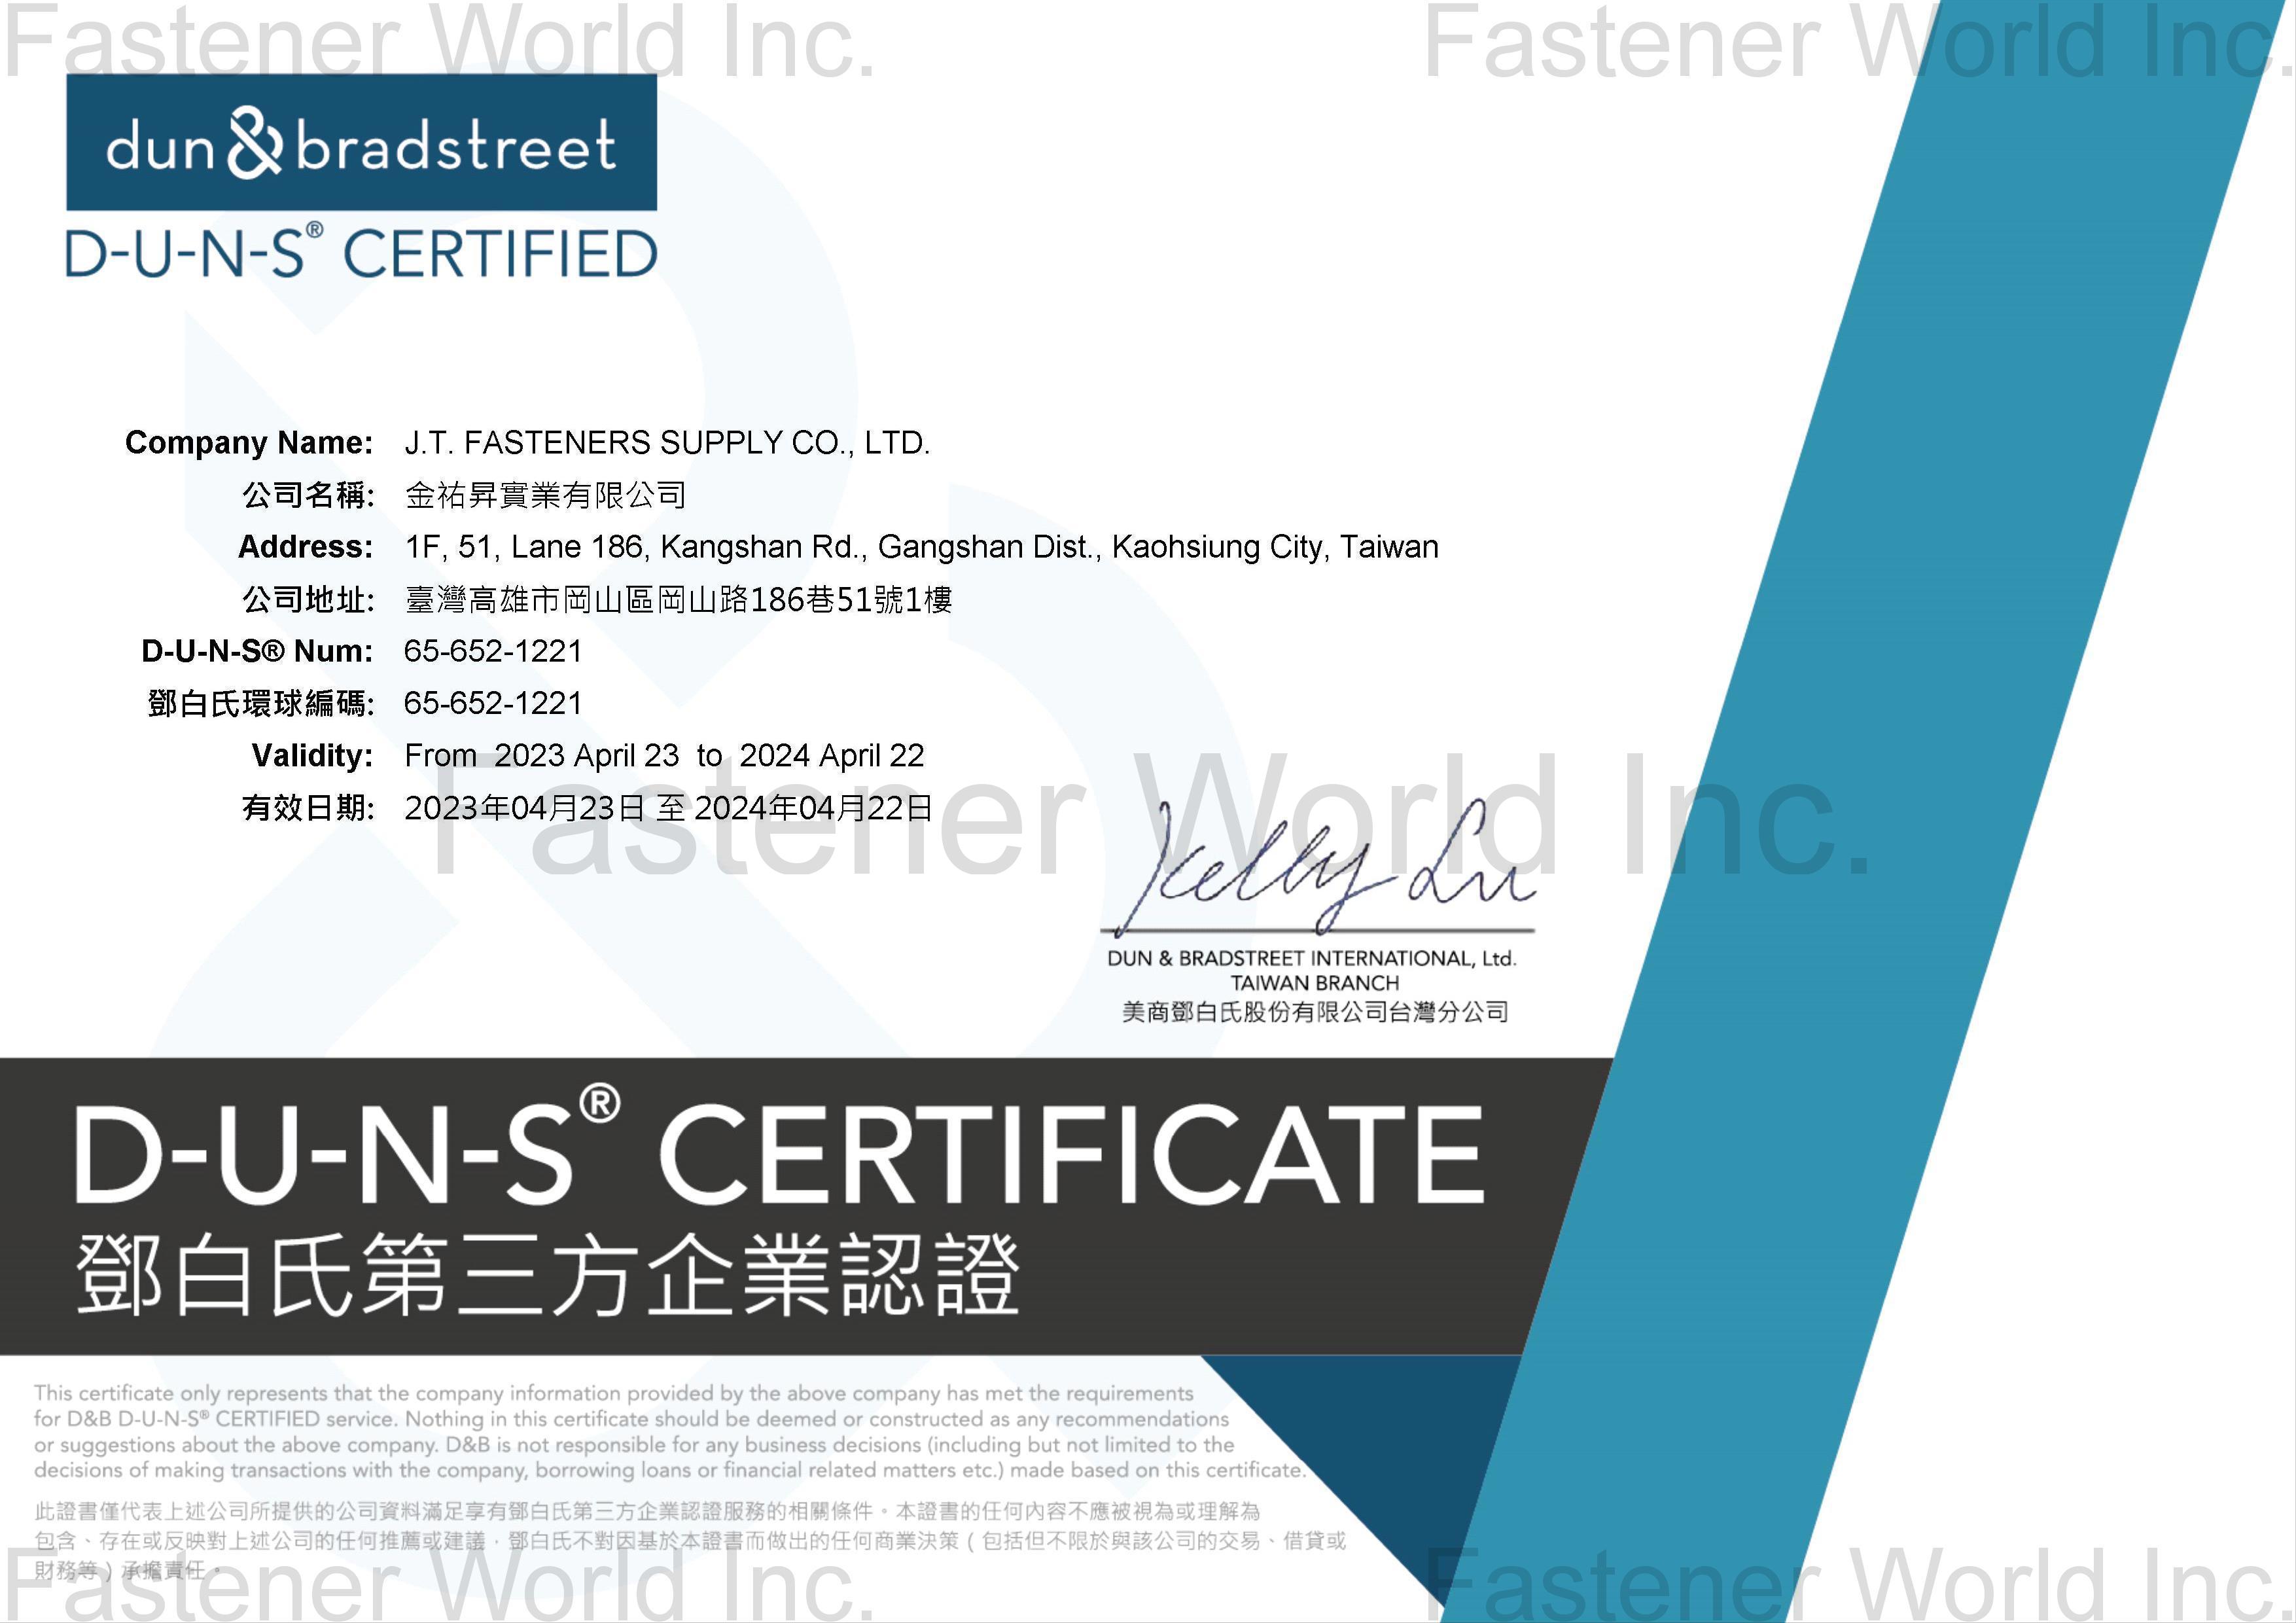 金祐昇實業有限公司 (J. T. Fasteners Supply Co., Ltd.)  , D-U-N-S Certificate (2023.4.23- 2024.4.22)